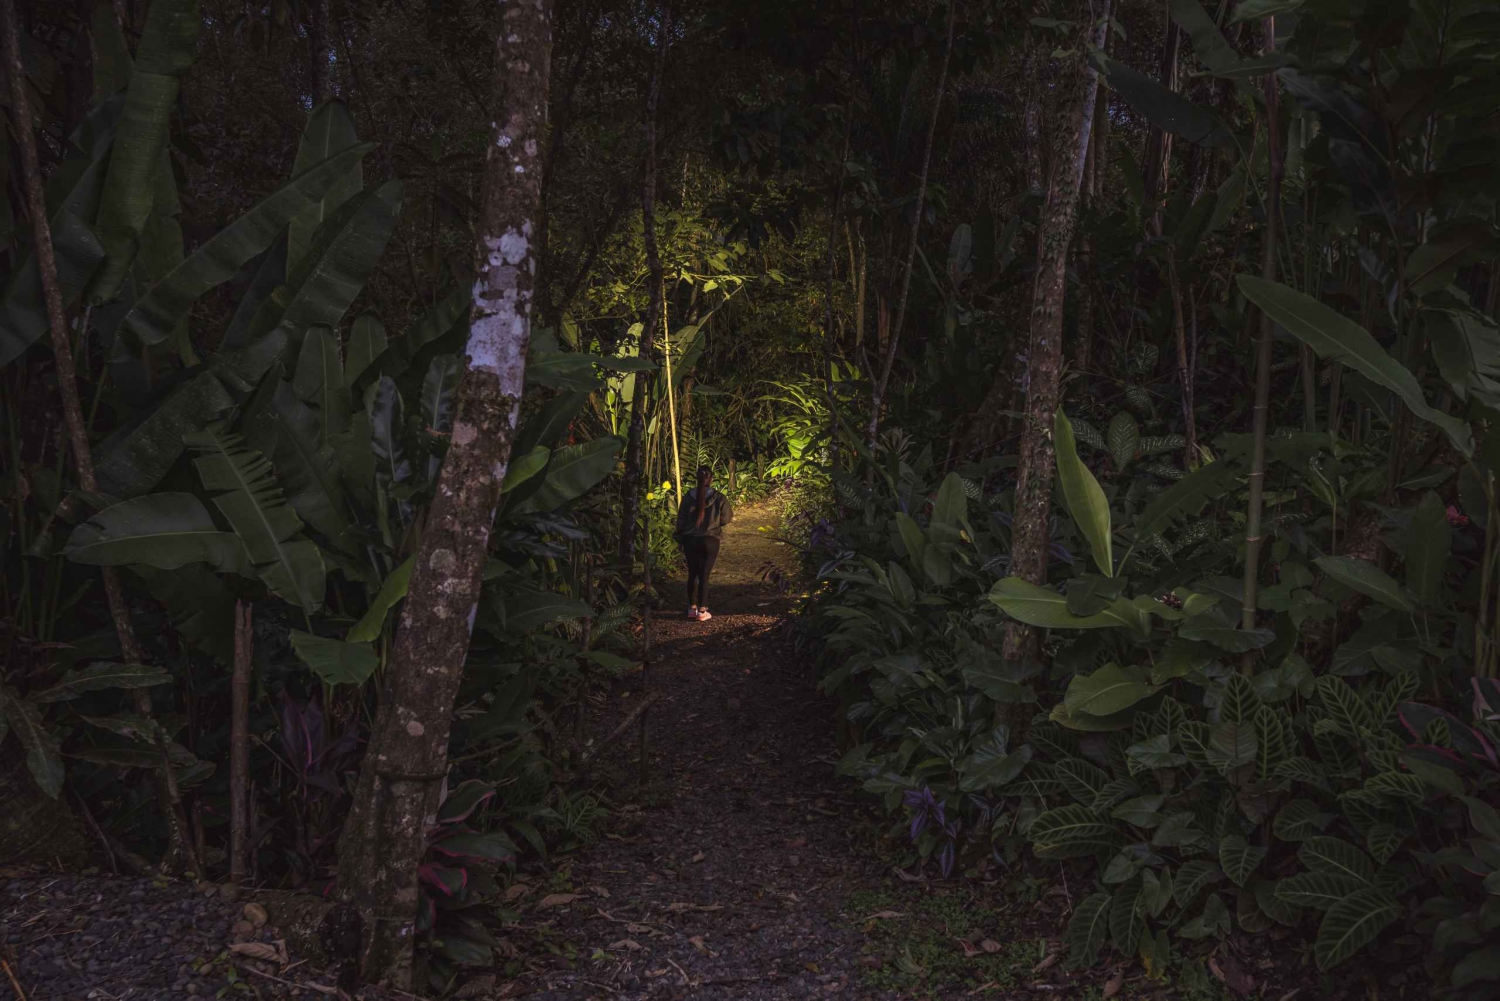 La Fortuna Arenal : Escursione notturna nella foresta pluviale .